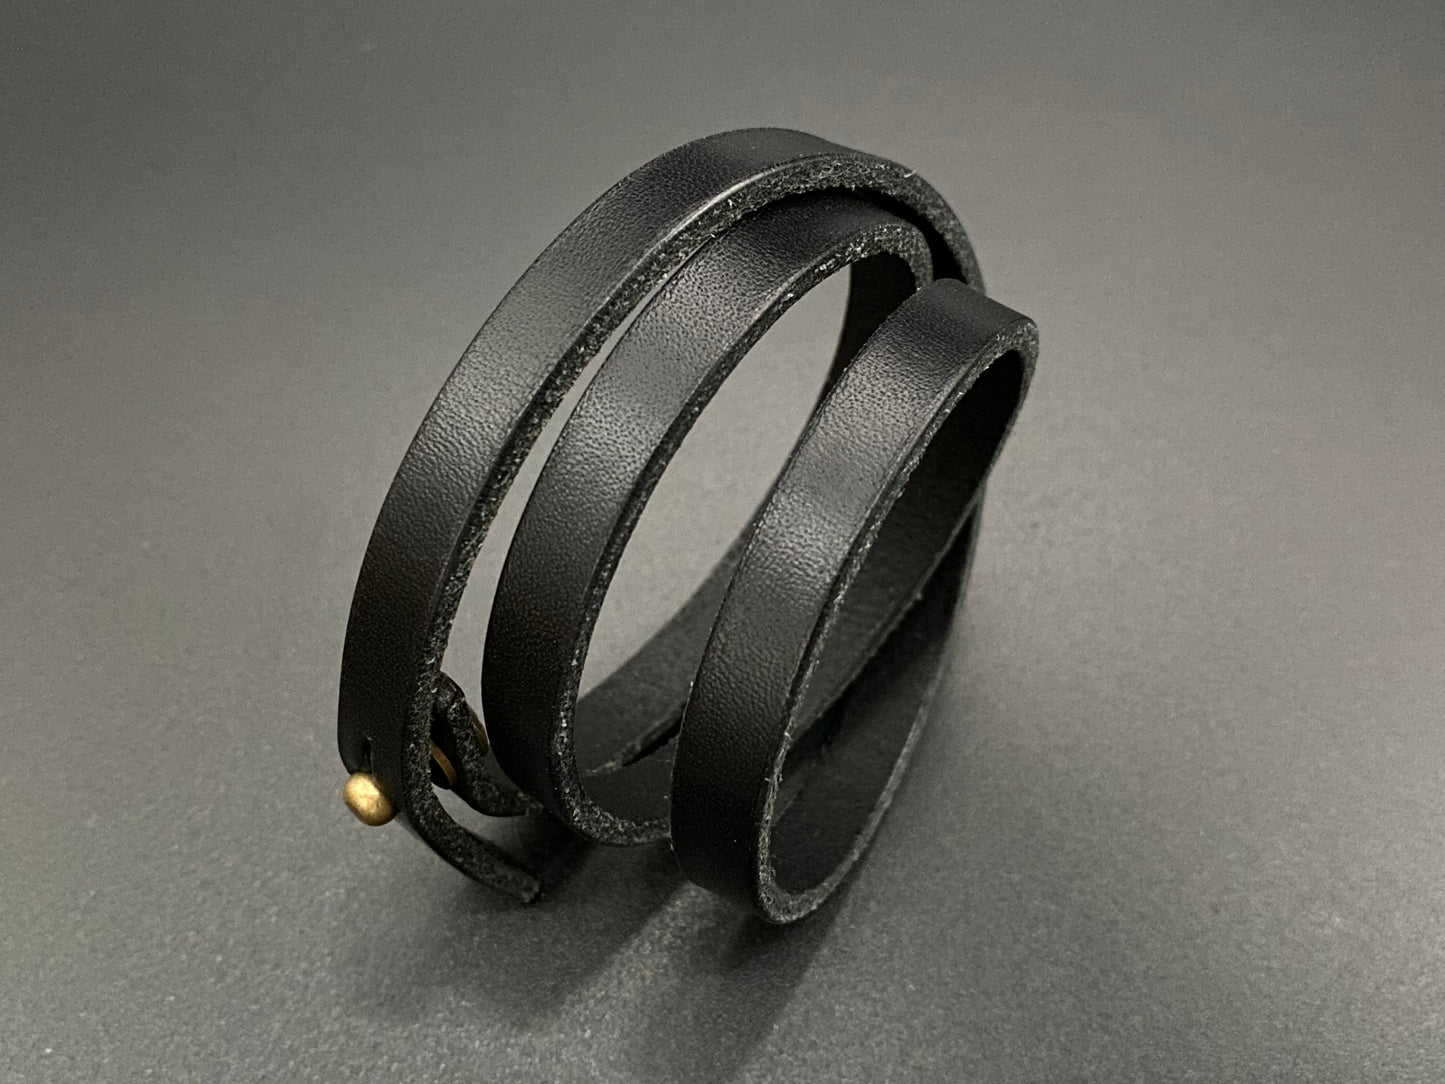 Leather bracelets 3 rounds. Model: Hardy